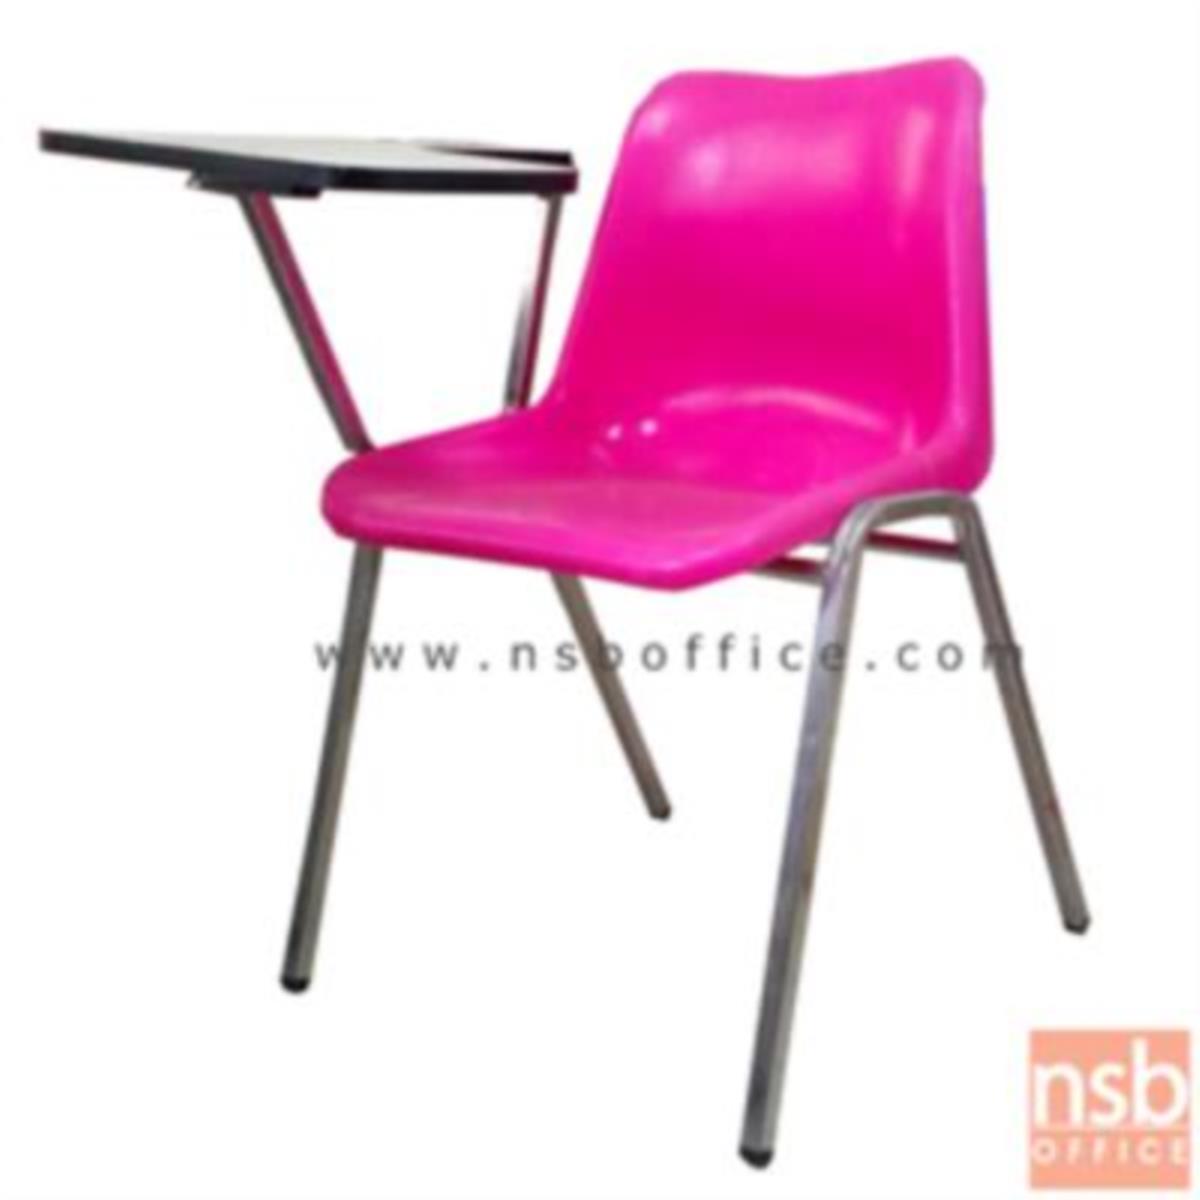 เก้าอี้เลคเชอร์เฟรมโพลี่ รุ่น C8-960 ขาเหล็กชุบโครเมี่ยม